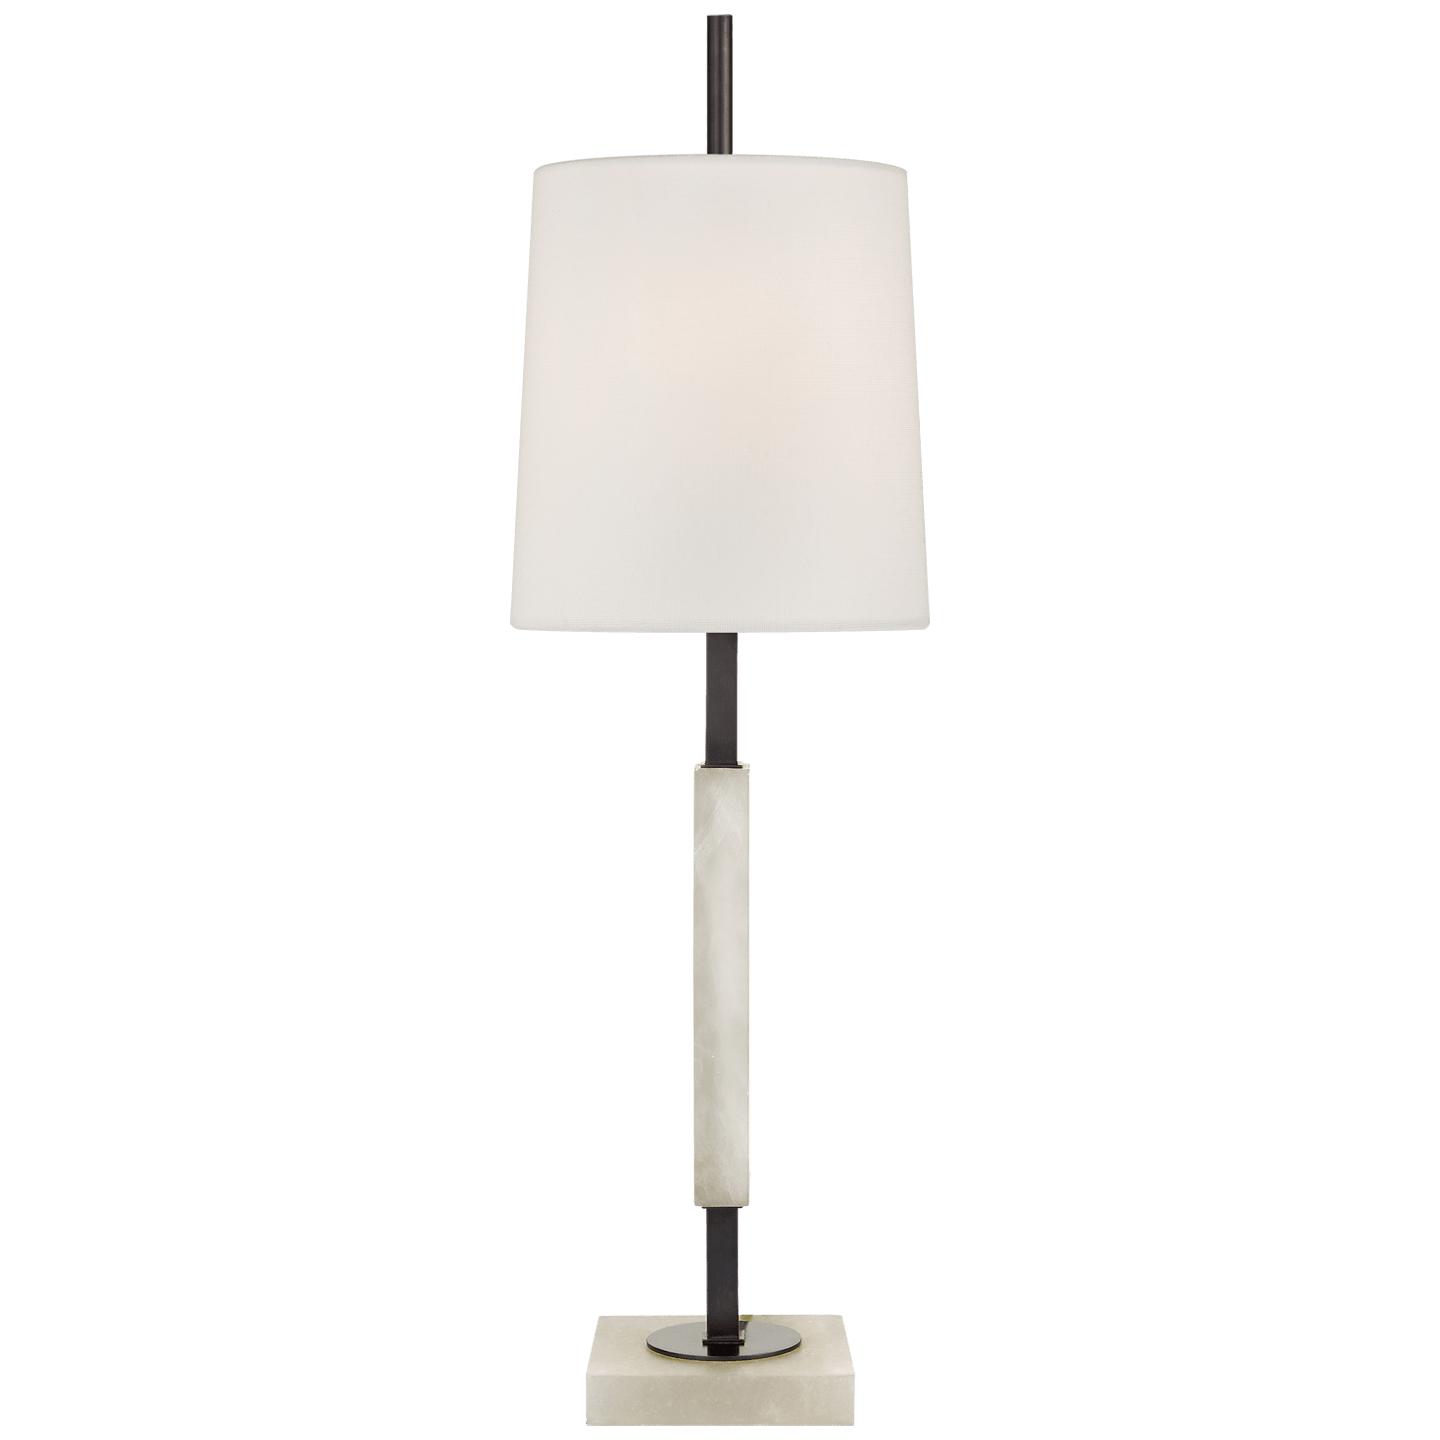 Купить Настольная лампа Lexington Medium Table Lamp в интернет-магазине roooms.ru